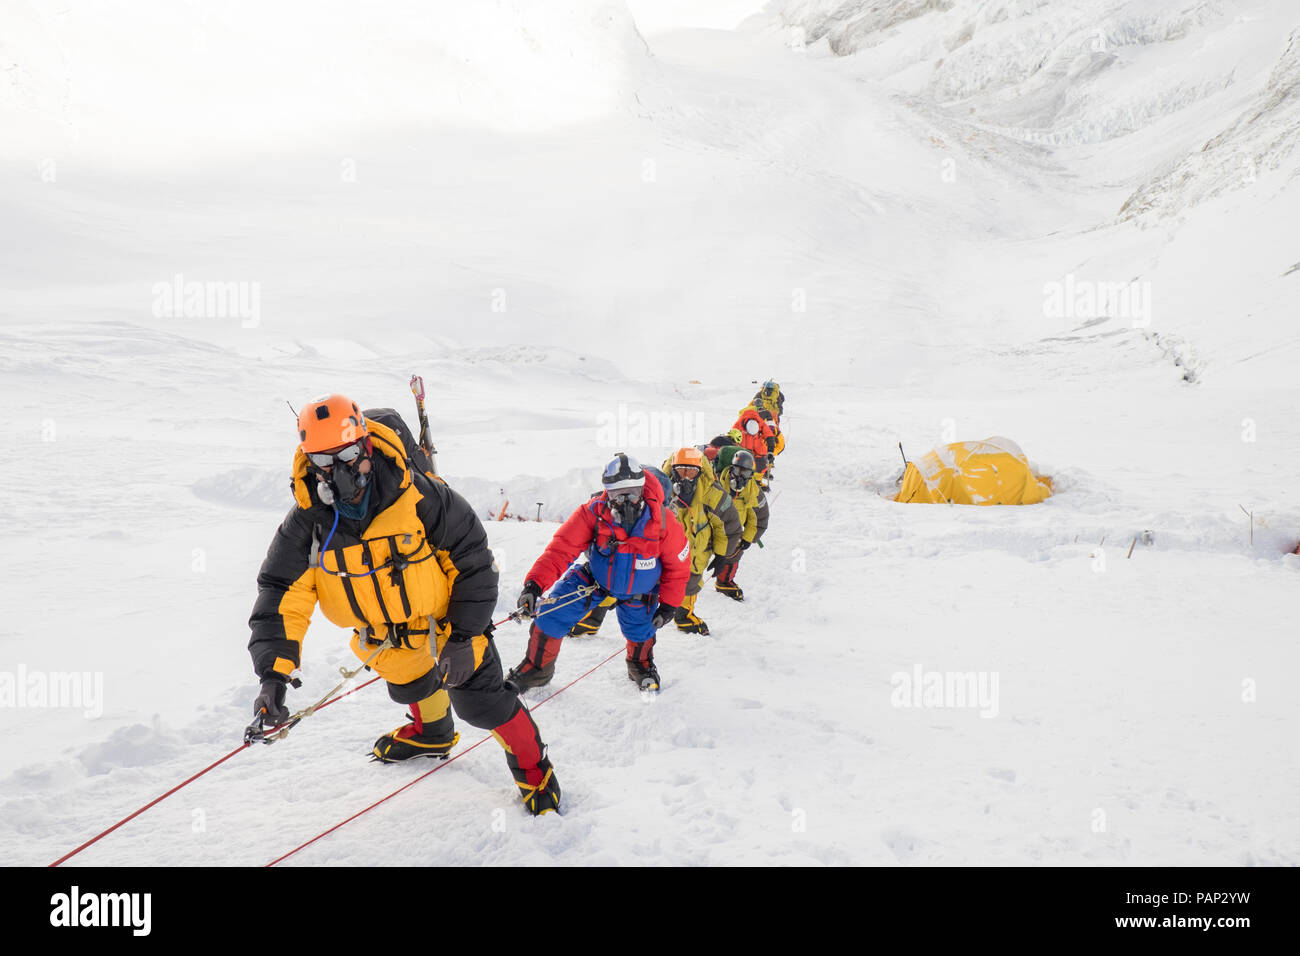 Nepal, Solo Khumbu, Everest, Sagamartha National Park, angeseilt Team aufsteigend, das Tragen von oxigen Masken Stockfoto